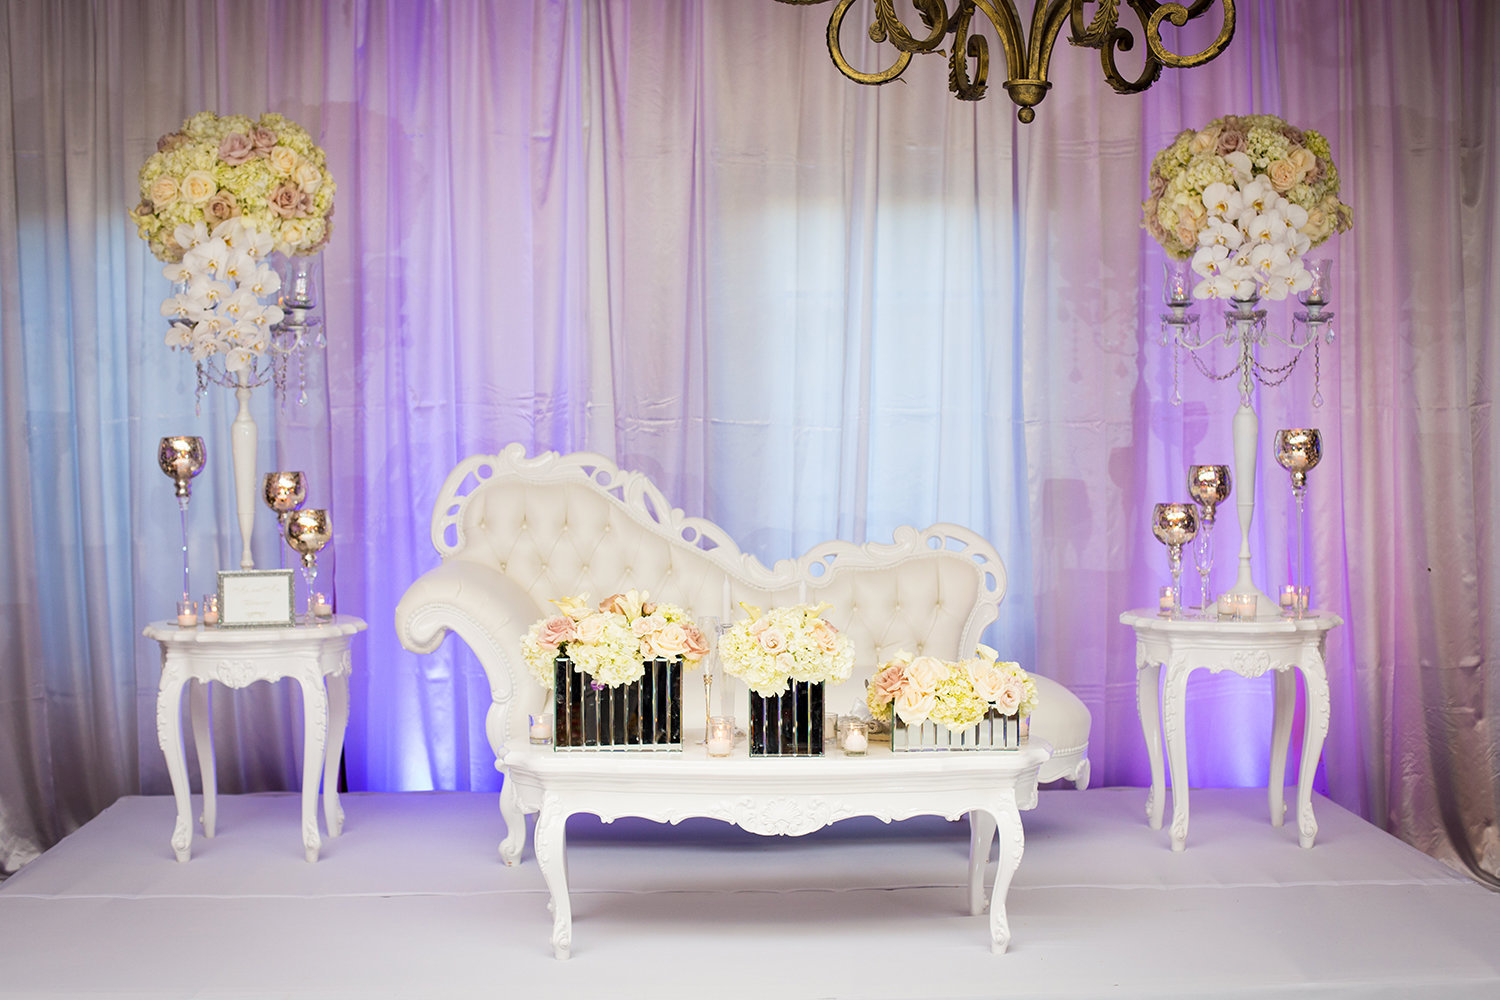 Elegant wedding reception head table